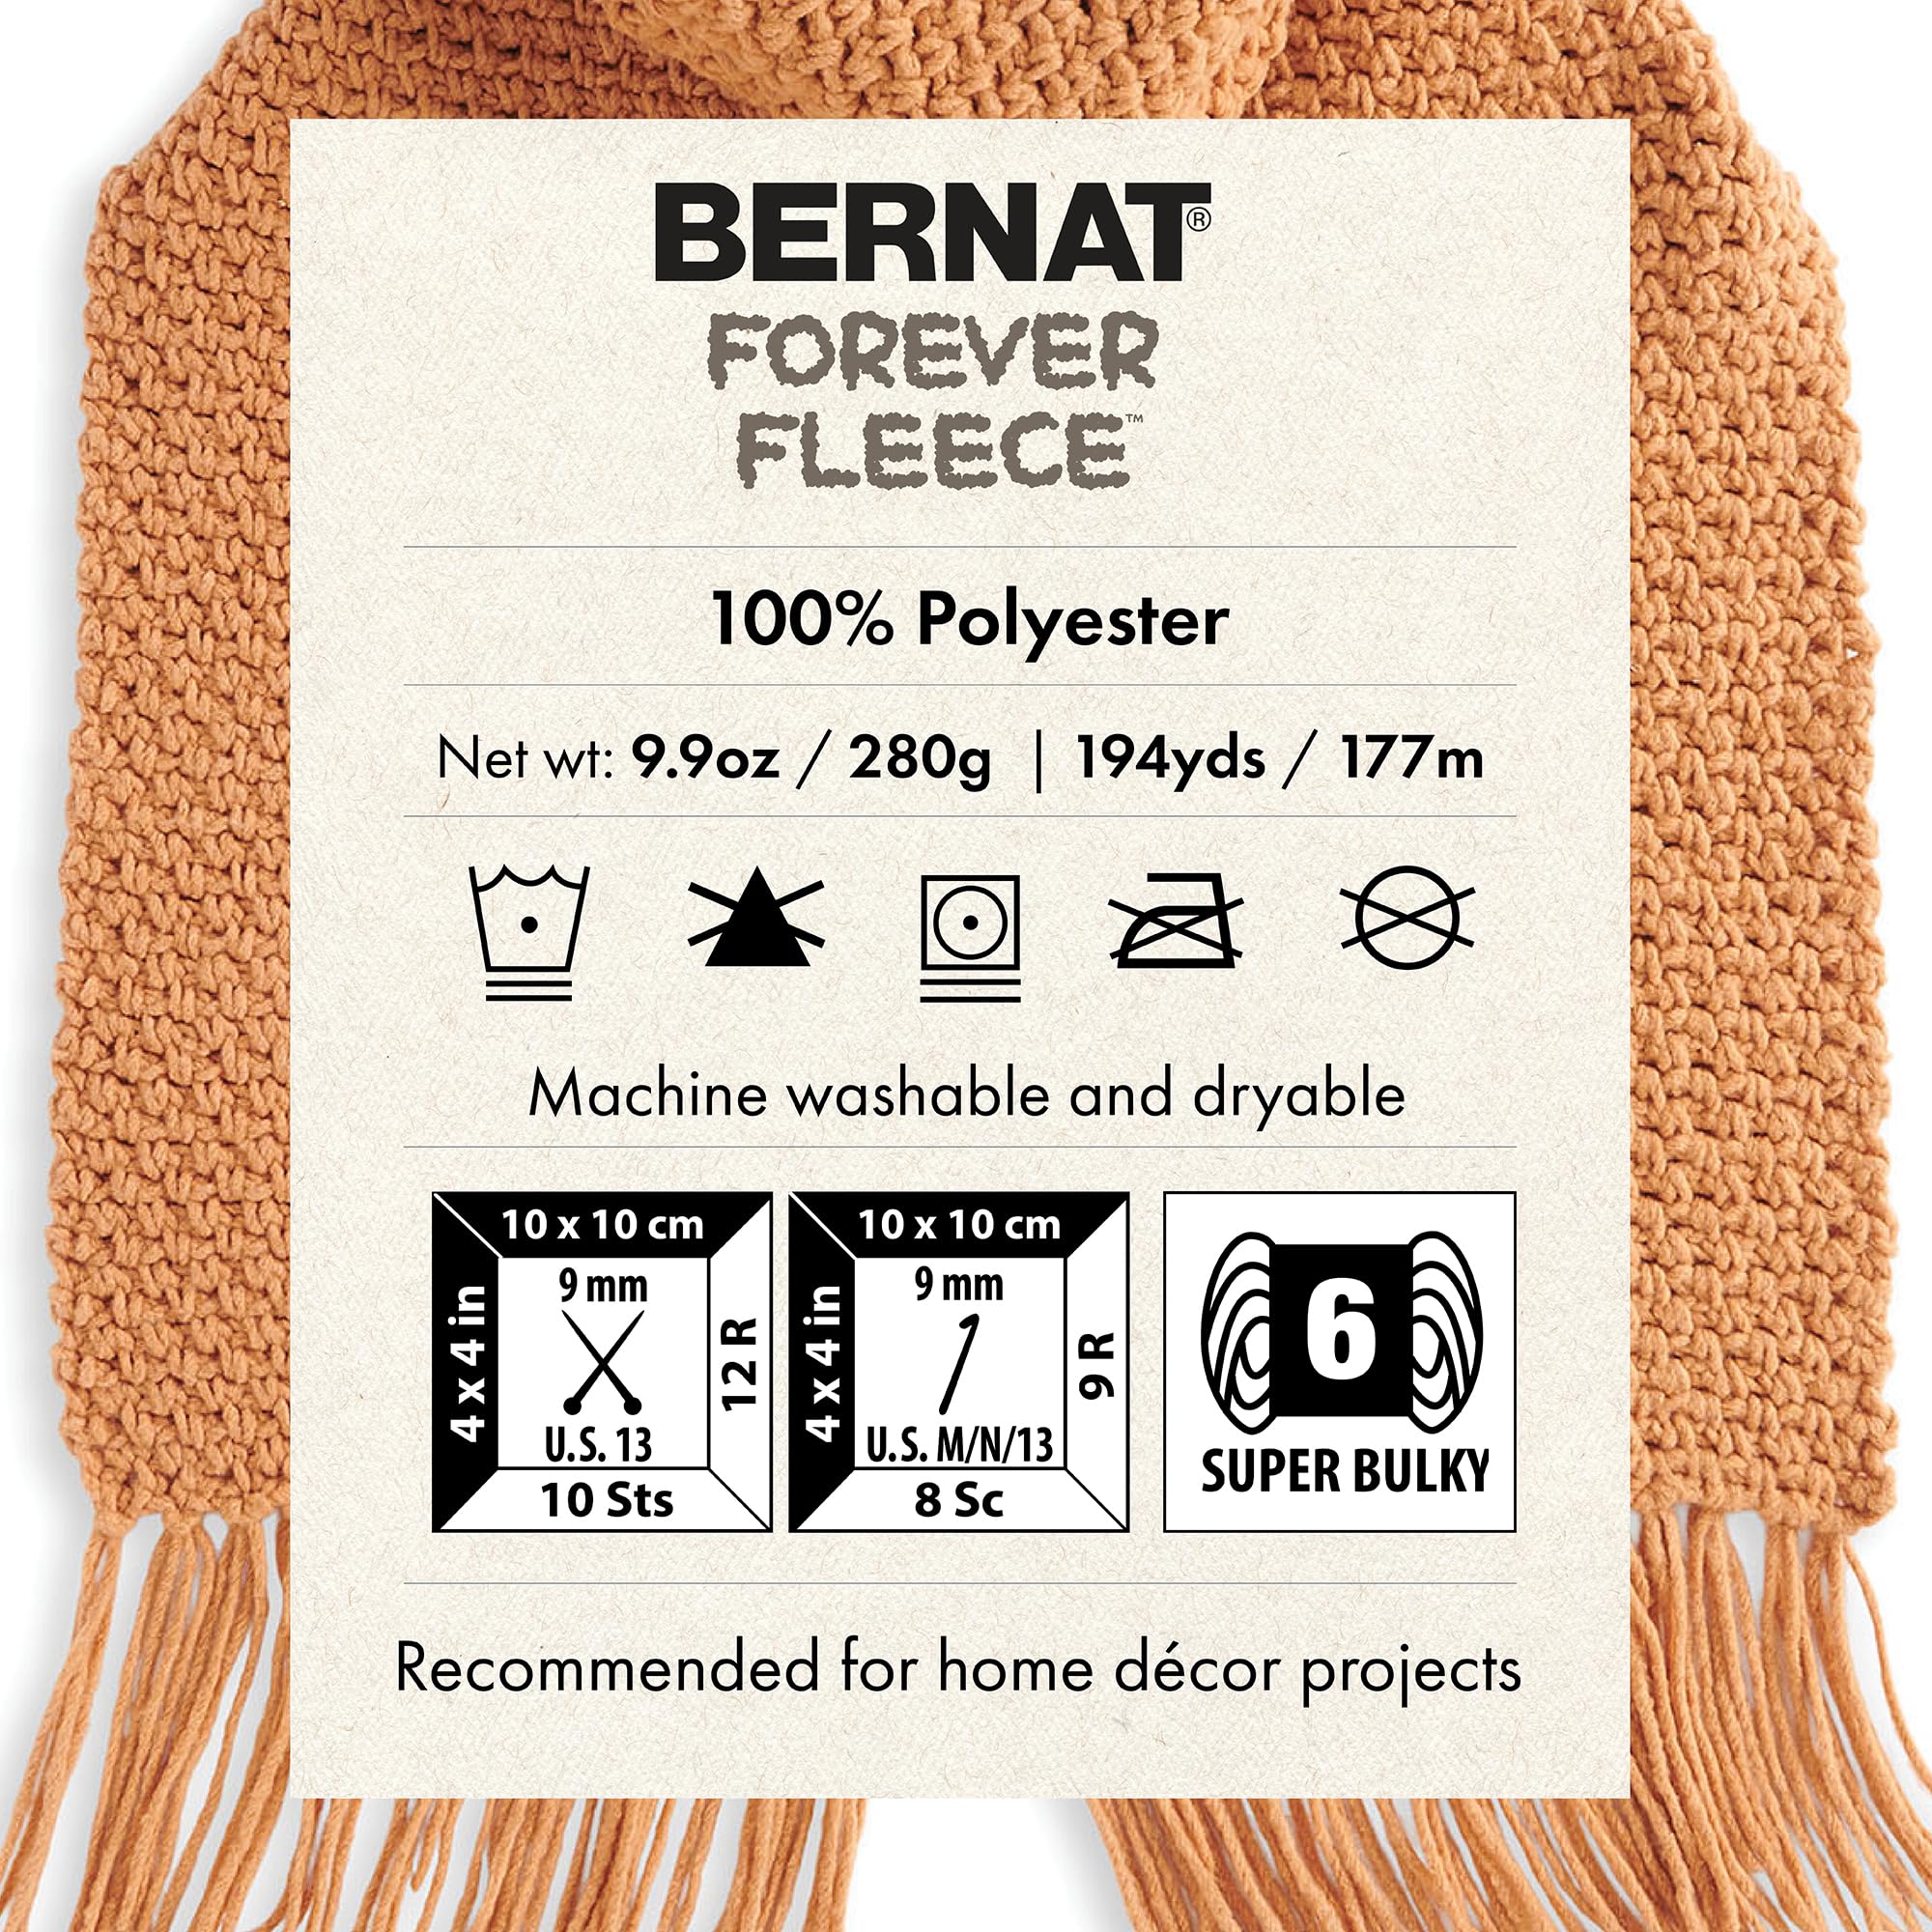 Bernat Forever Fleece Cornflower Yarn - 2 Pack of 280g/9.9oz - Polyester - 6 Super Bulky - 194 Yards - Knitting/Crochet